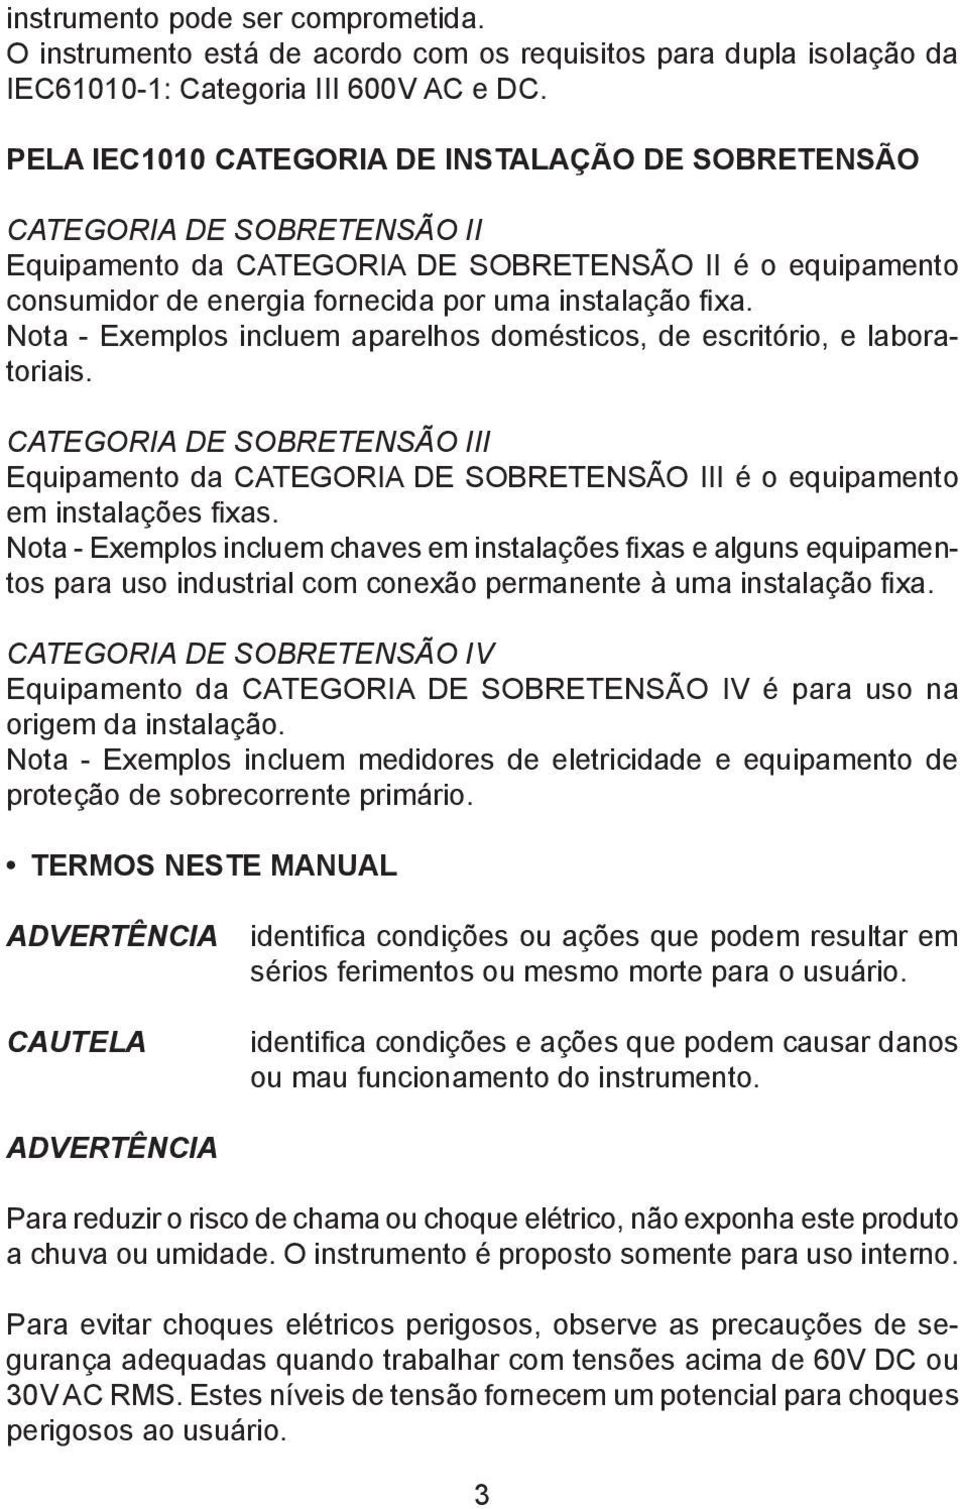 Nota - Exemplos incluem aparelhos domésticos, de escritório, e laboratoriais. CATEGORIA DE SOBRETENSÃO III Equipamento da CATEGORIA DE SOBRETENSÃO III é o equipamento em instalações fixas.